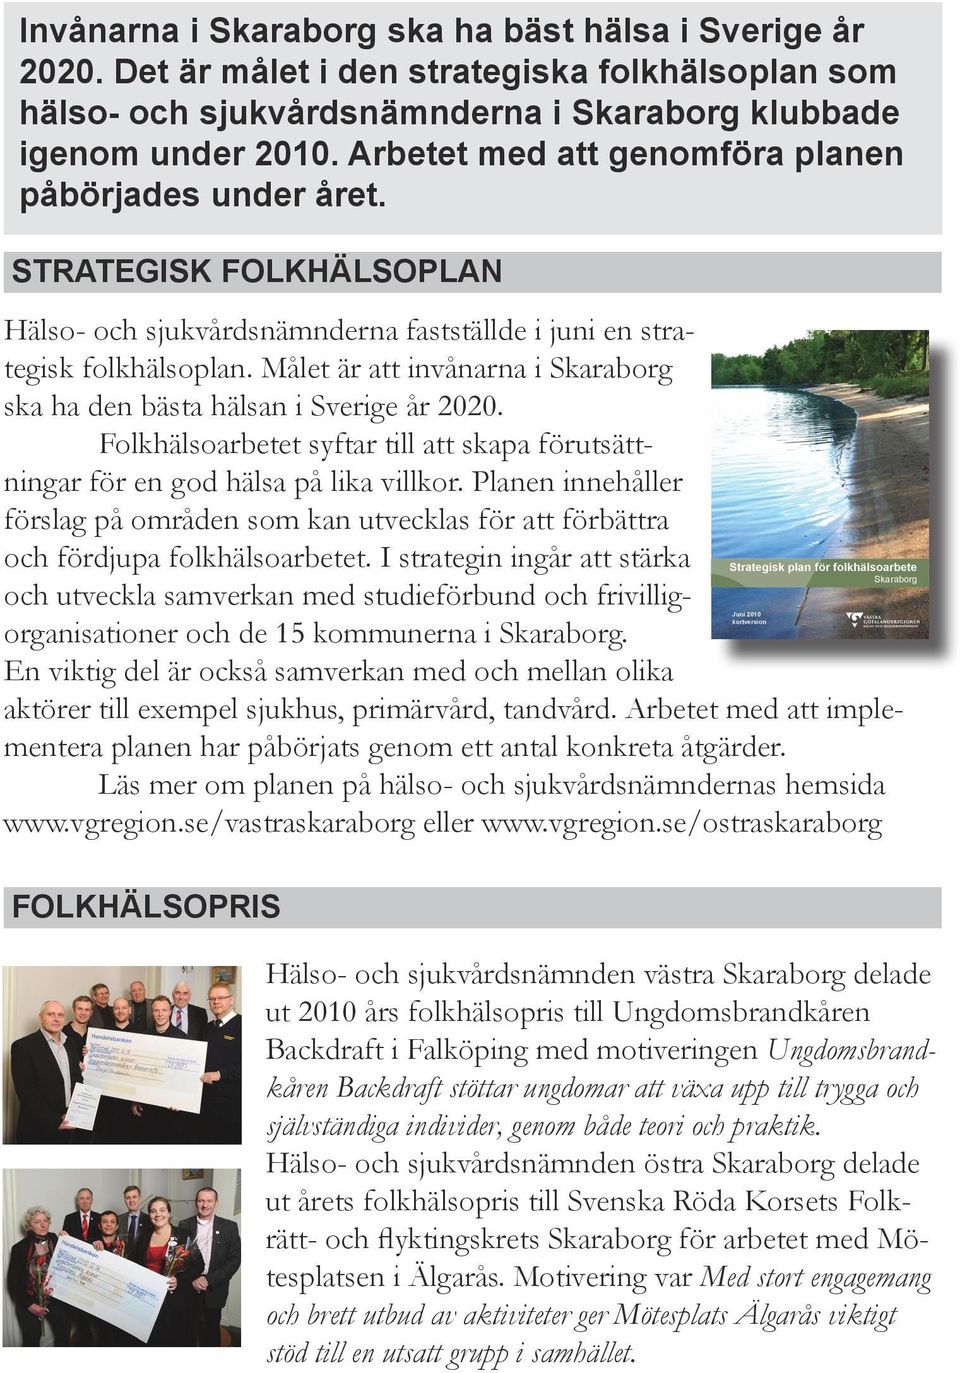 Målet är att invånarna i Skaraborg ska ha den bästa hälsan i Sverige år 2020. Folkhälsoarbetet syftar till att skapa förutsättningar för en god hälsa på lika villkor.